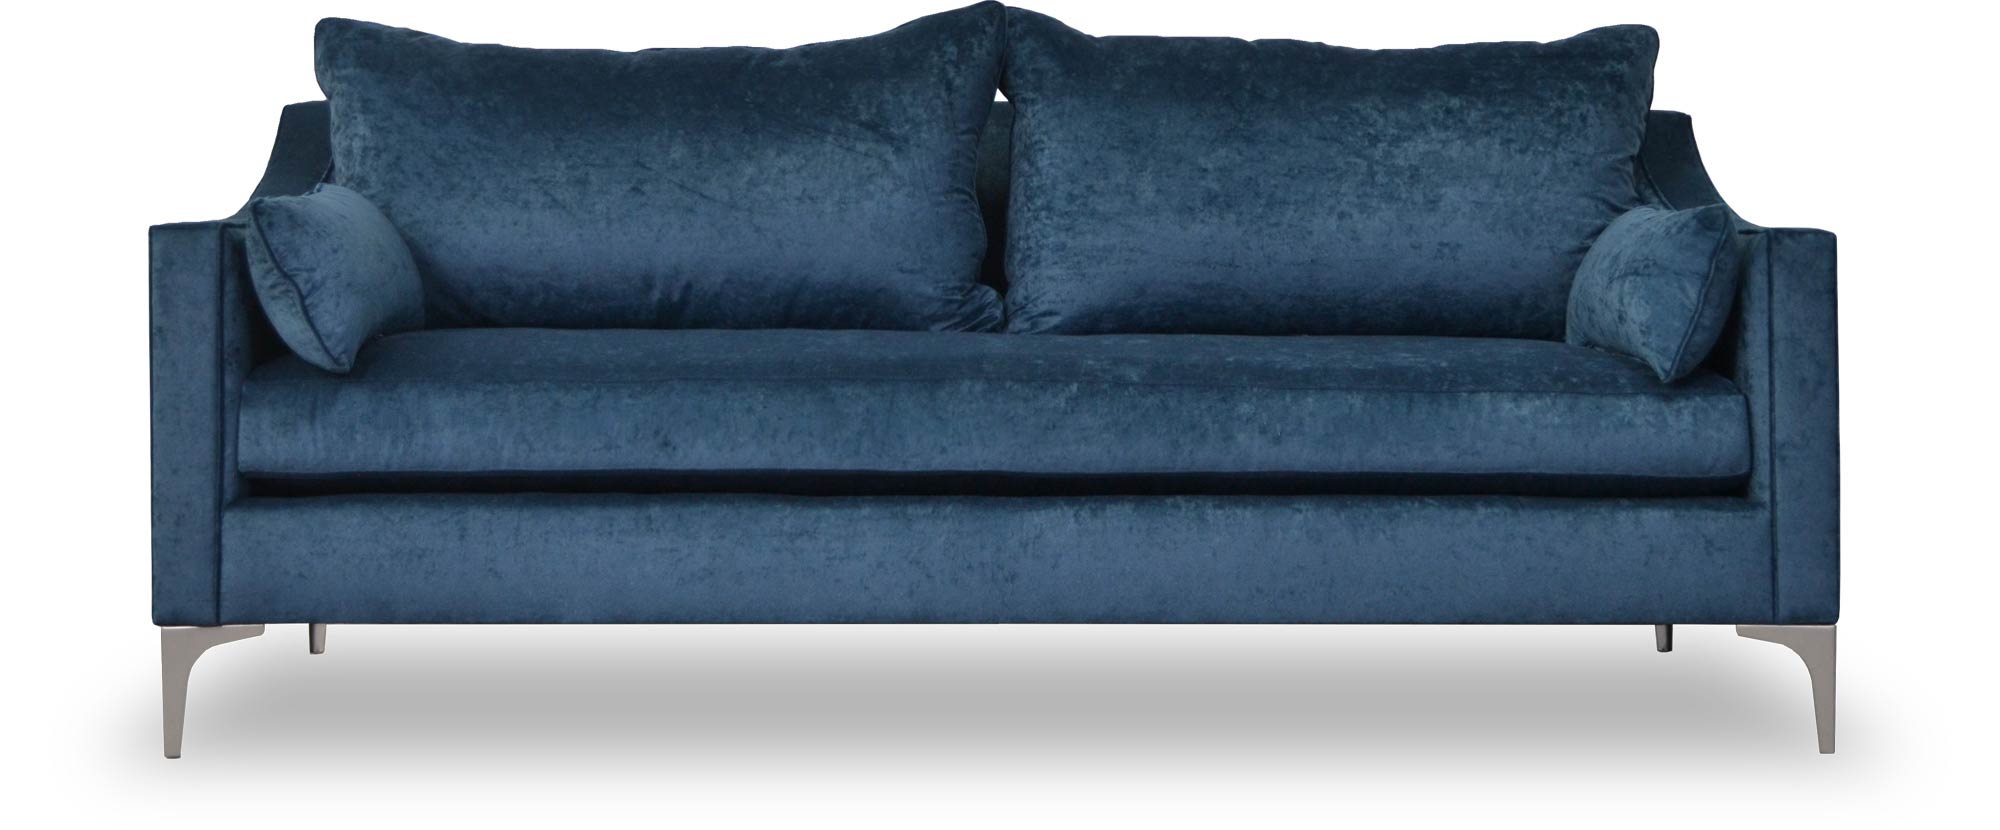 86 Scottie sofa in Gramercy Nautilus blue velvet